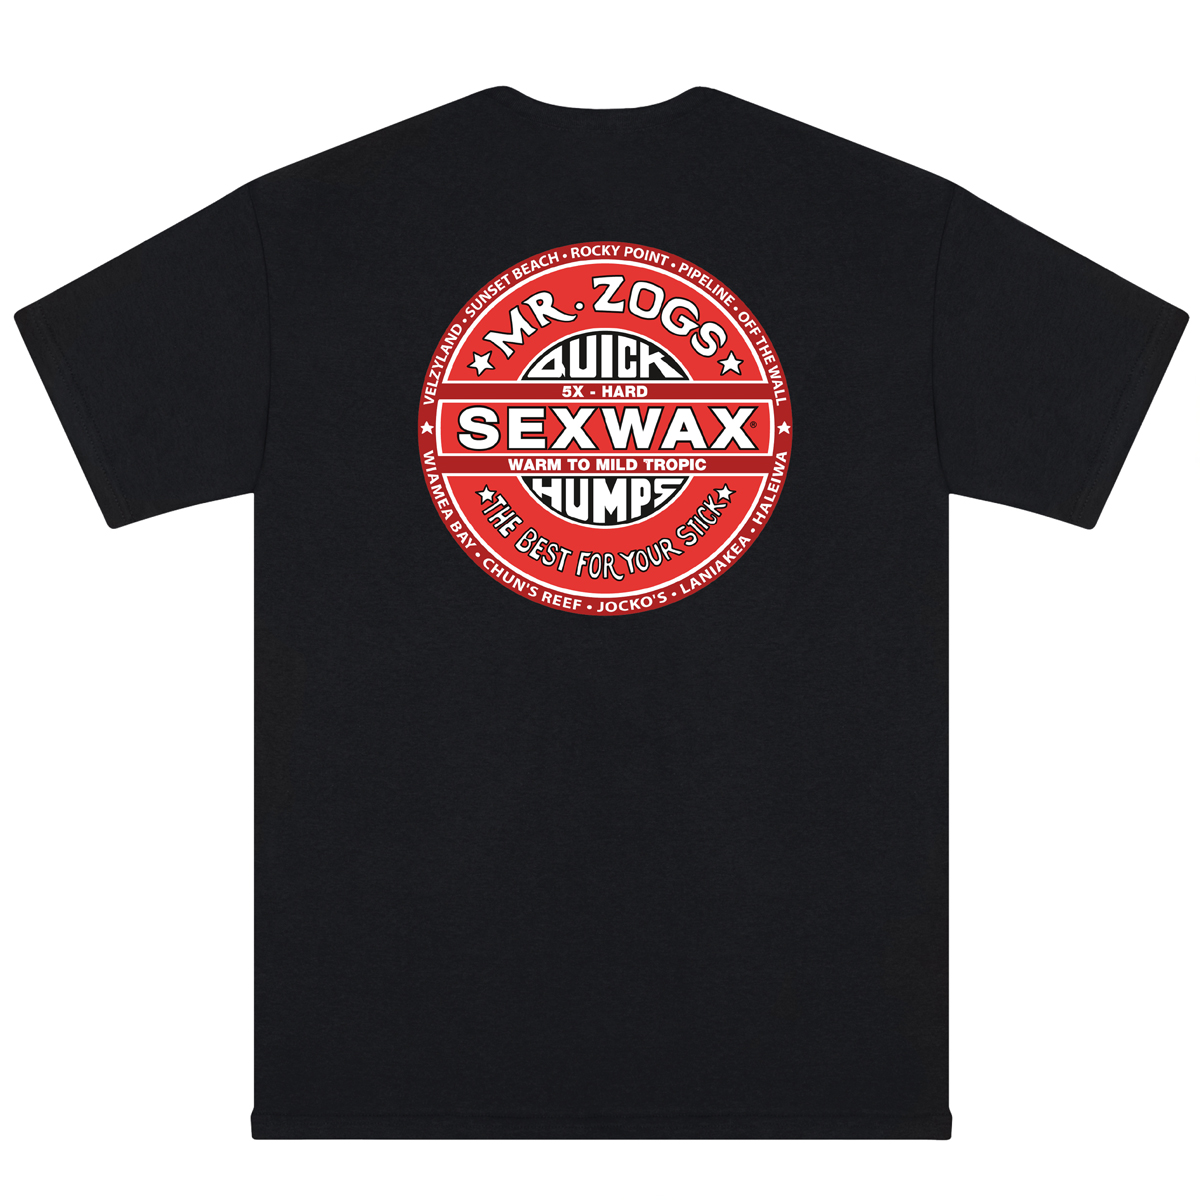 Sex Wax Hawaii Mens Short Sleeve 09s Mr Zogs Surfboard Wax